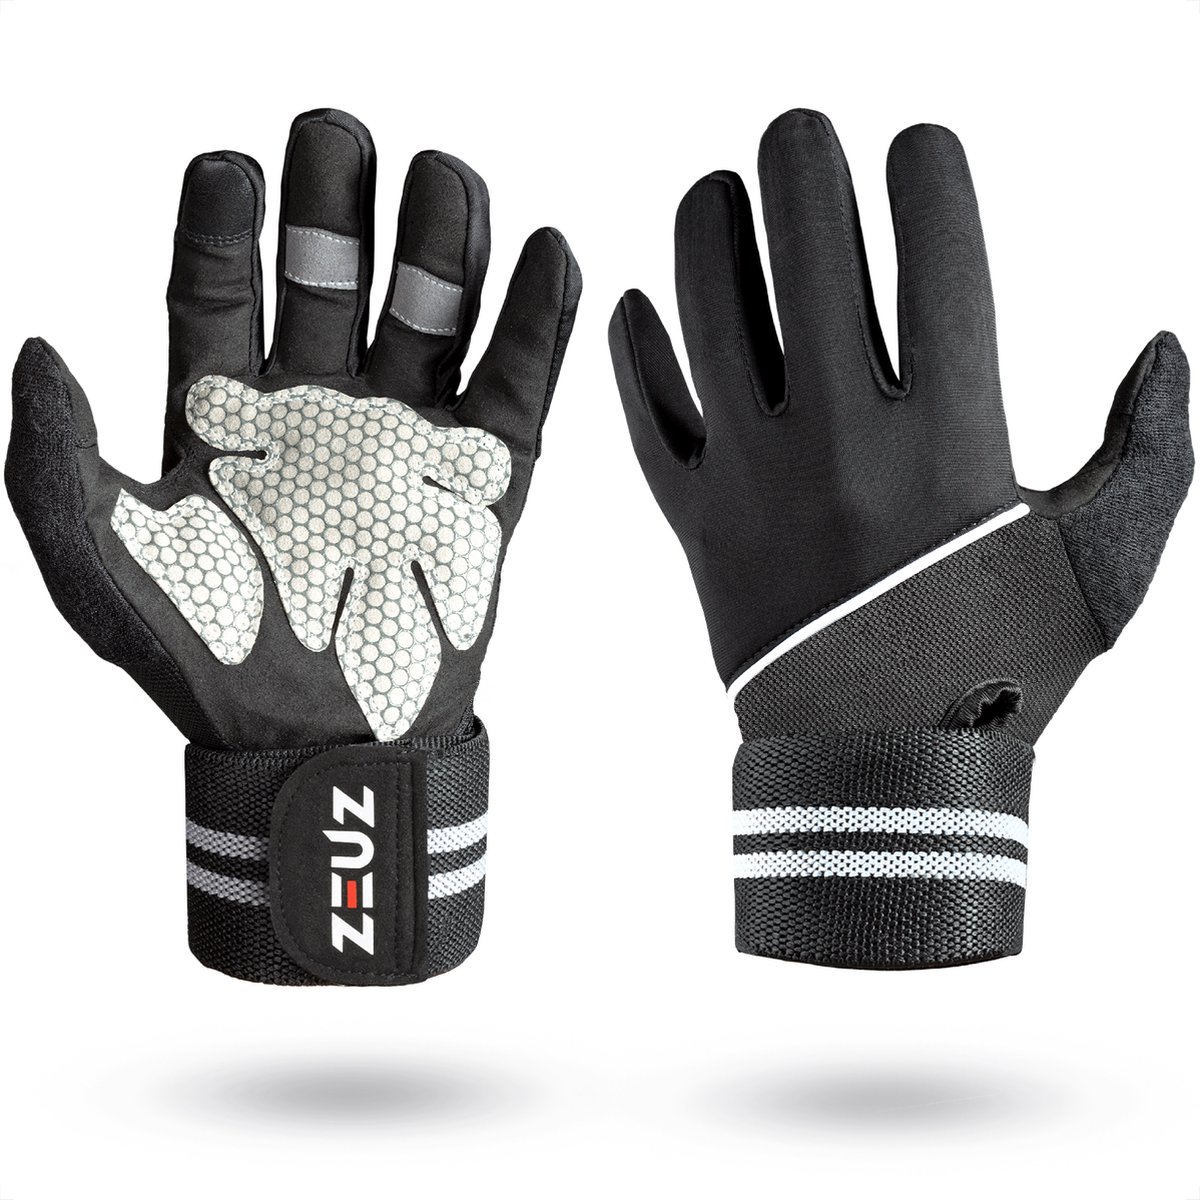 ZEUZ Sport & Fitness Handschoenen Heren & Dames - Gloves voor Krachttraining & CrossFit – Volledige Bescherming Vingers - Grijs & Zwart - Maat M - ZEUZ